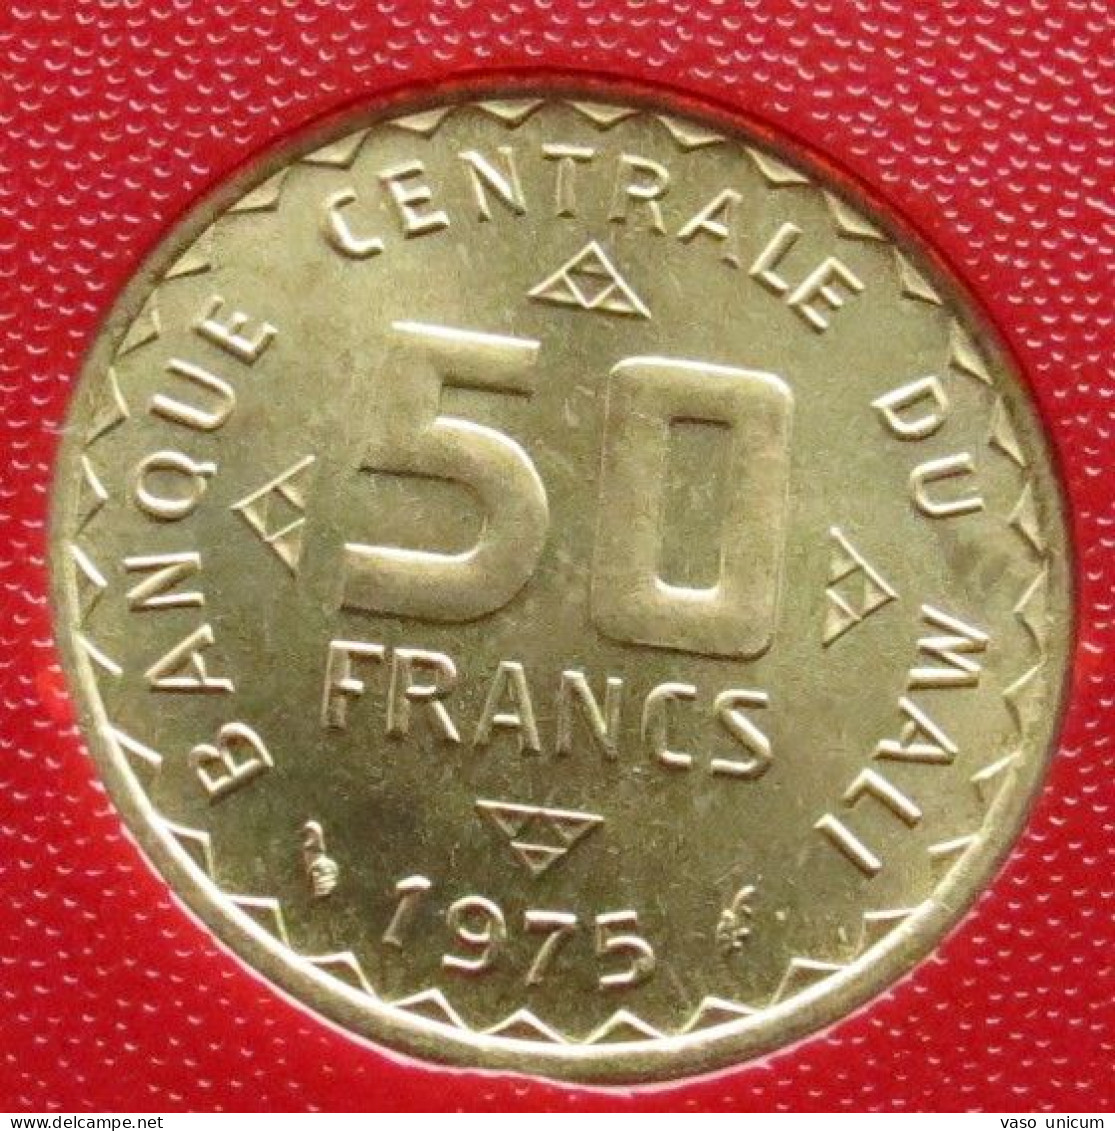 Mali 50 Francs 1975 FAO F.a.o. - Mali (1962-1984)